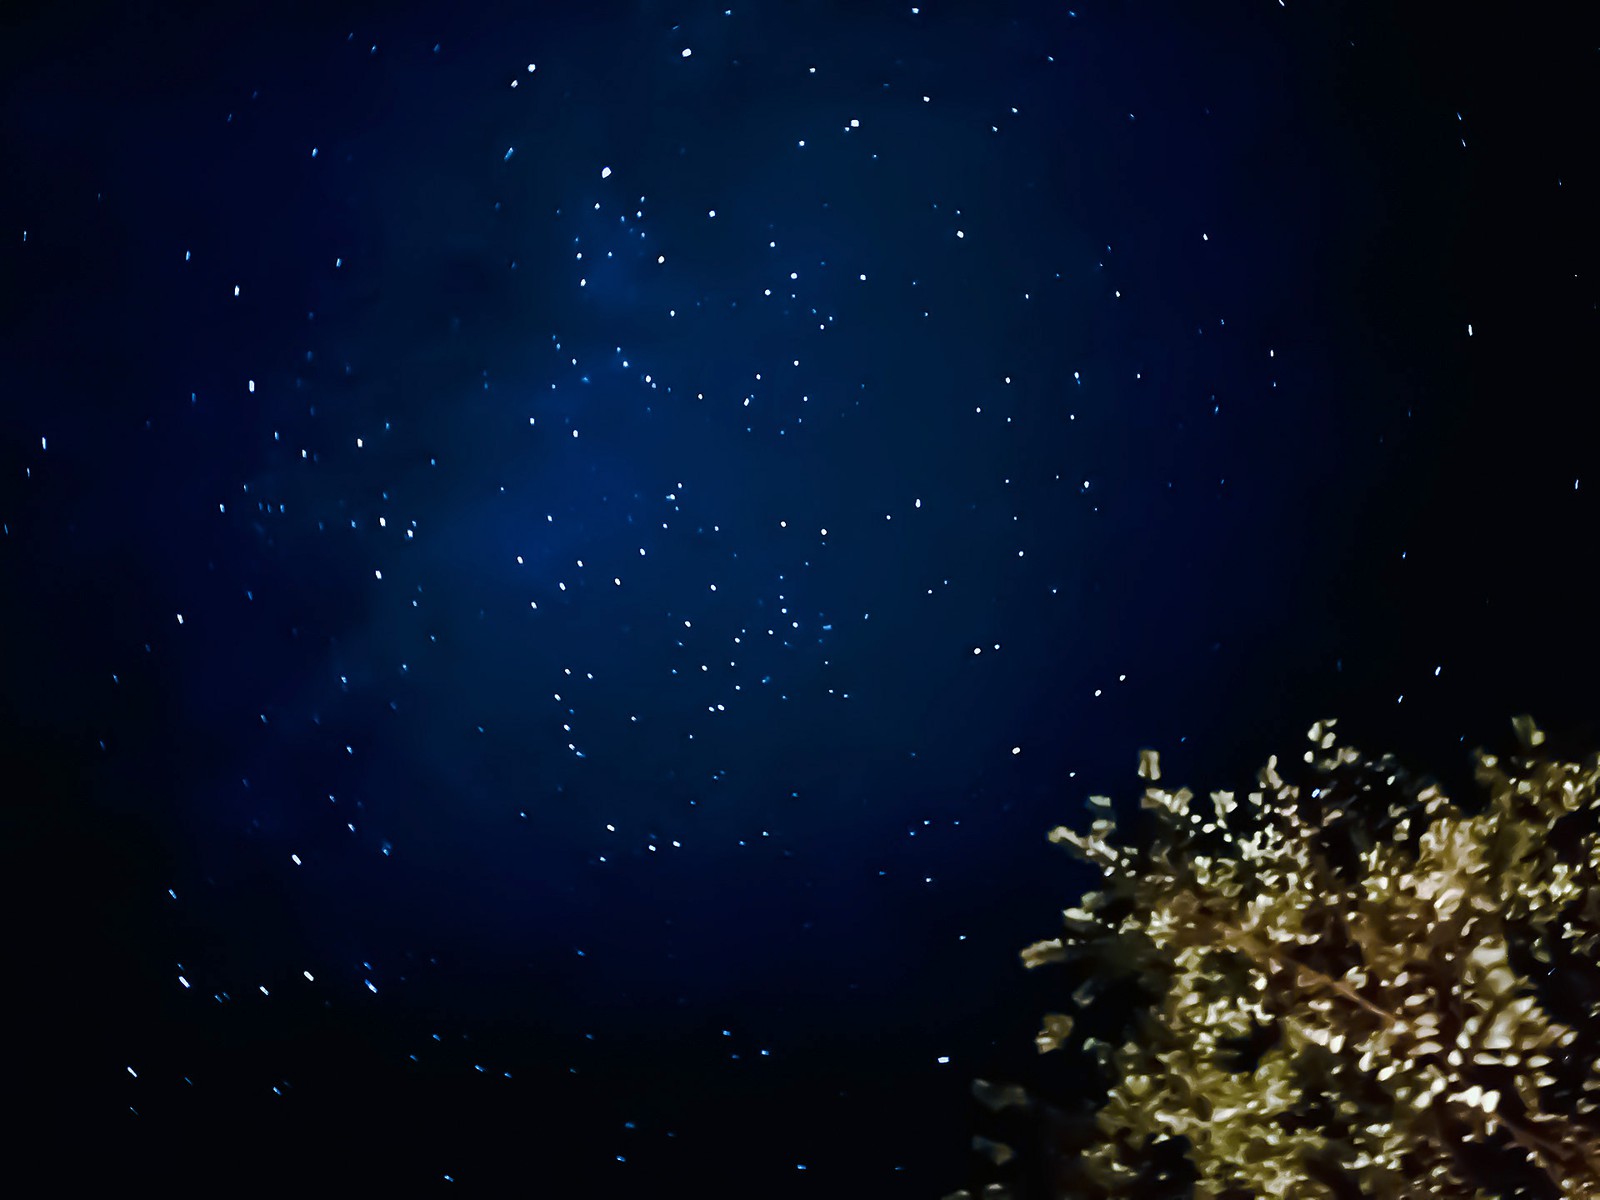 iPhoneで「星空」を綺麗に撮影する方法 | エレクトロニクス | LEON ...